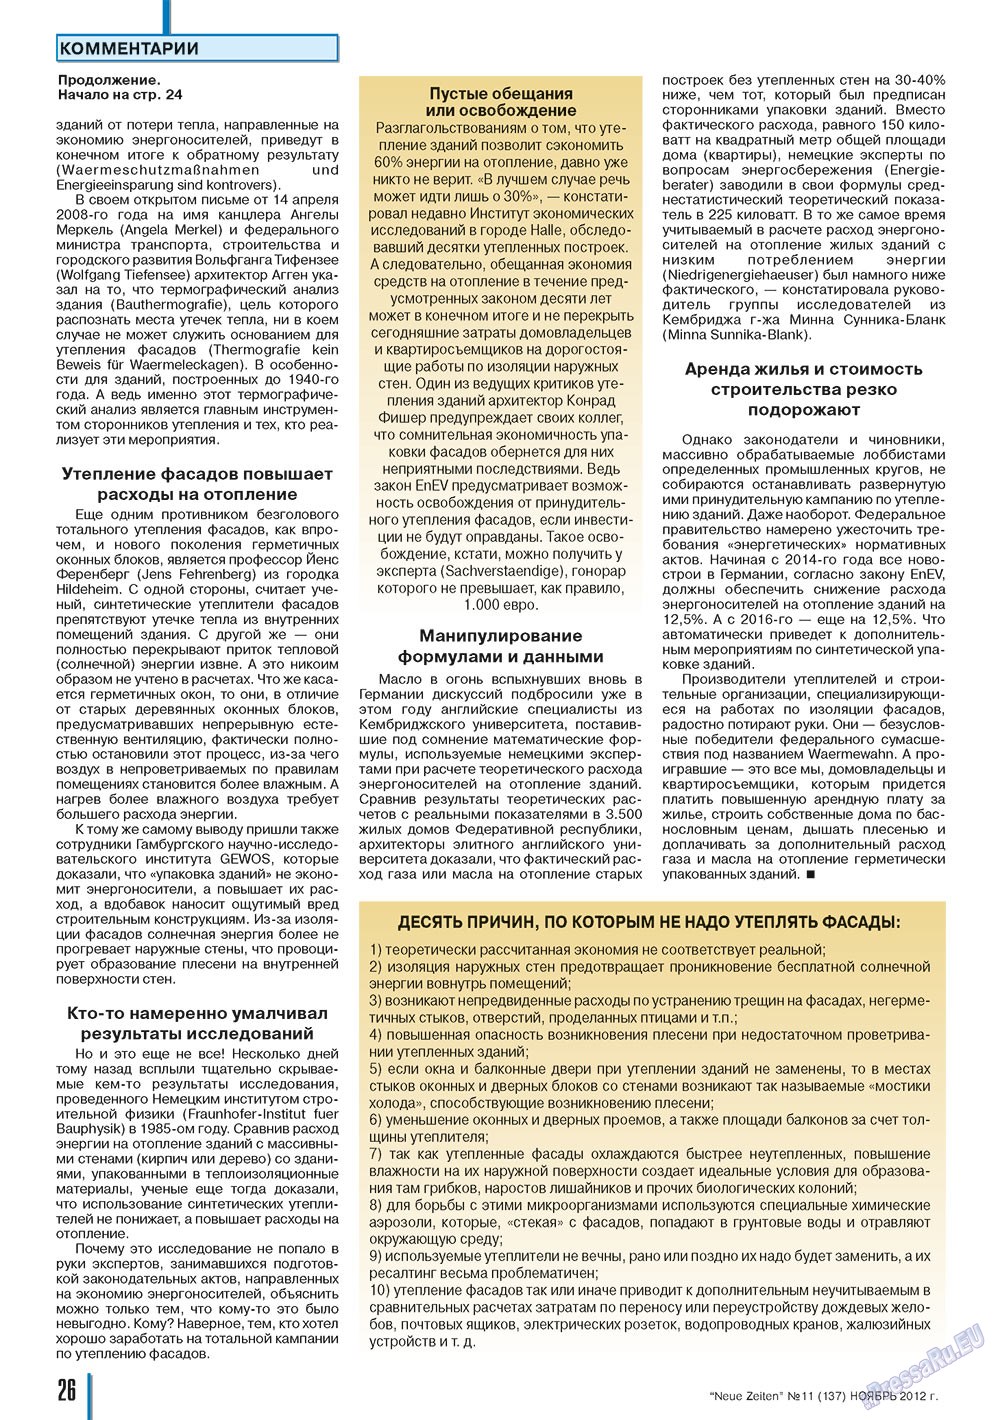 Neue Zeiten, журнал. 2012 №11 стр.26